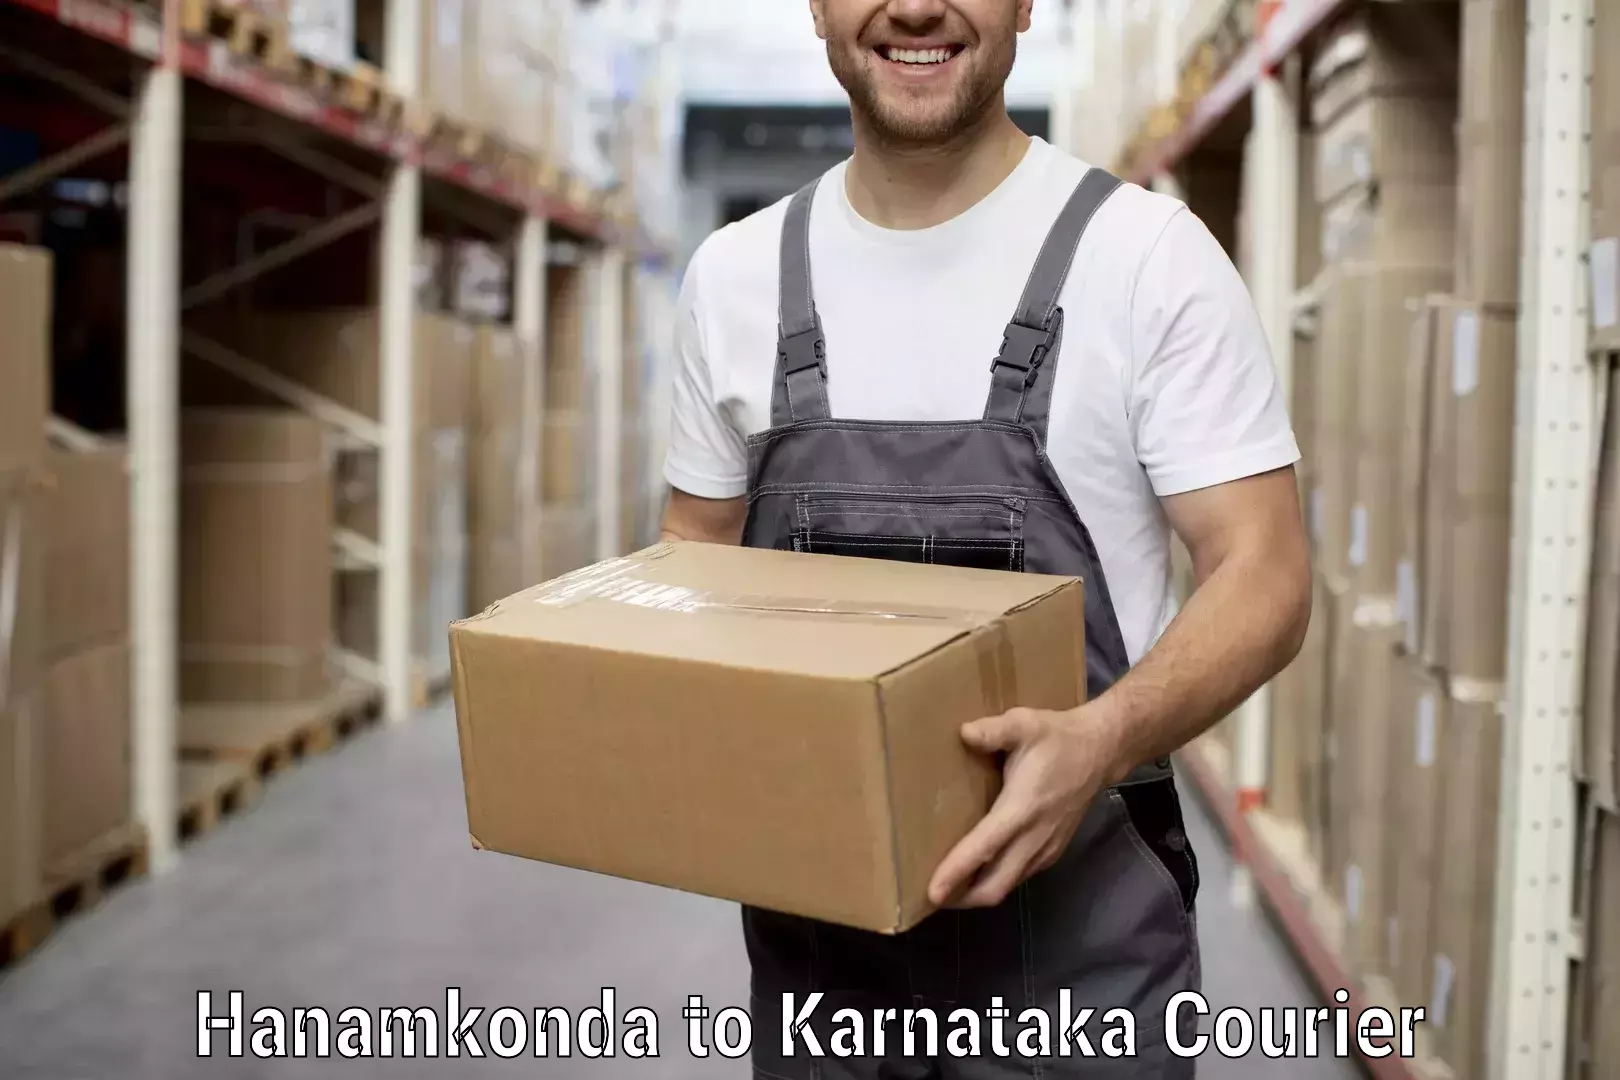 Efficient furniture movers Hanamkonda to Kanjarakatte